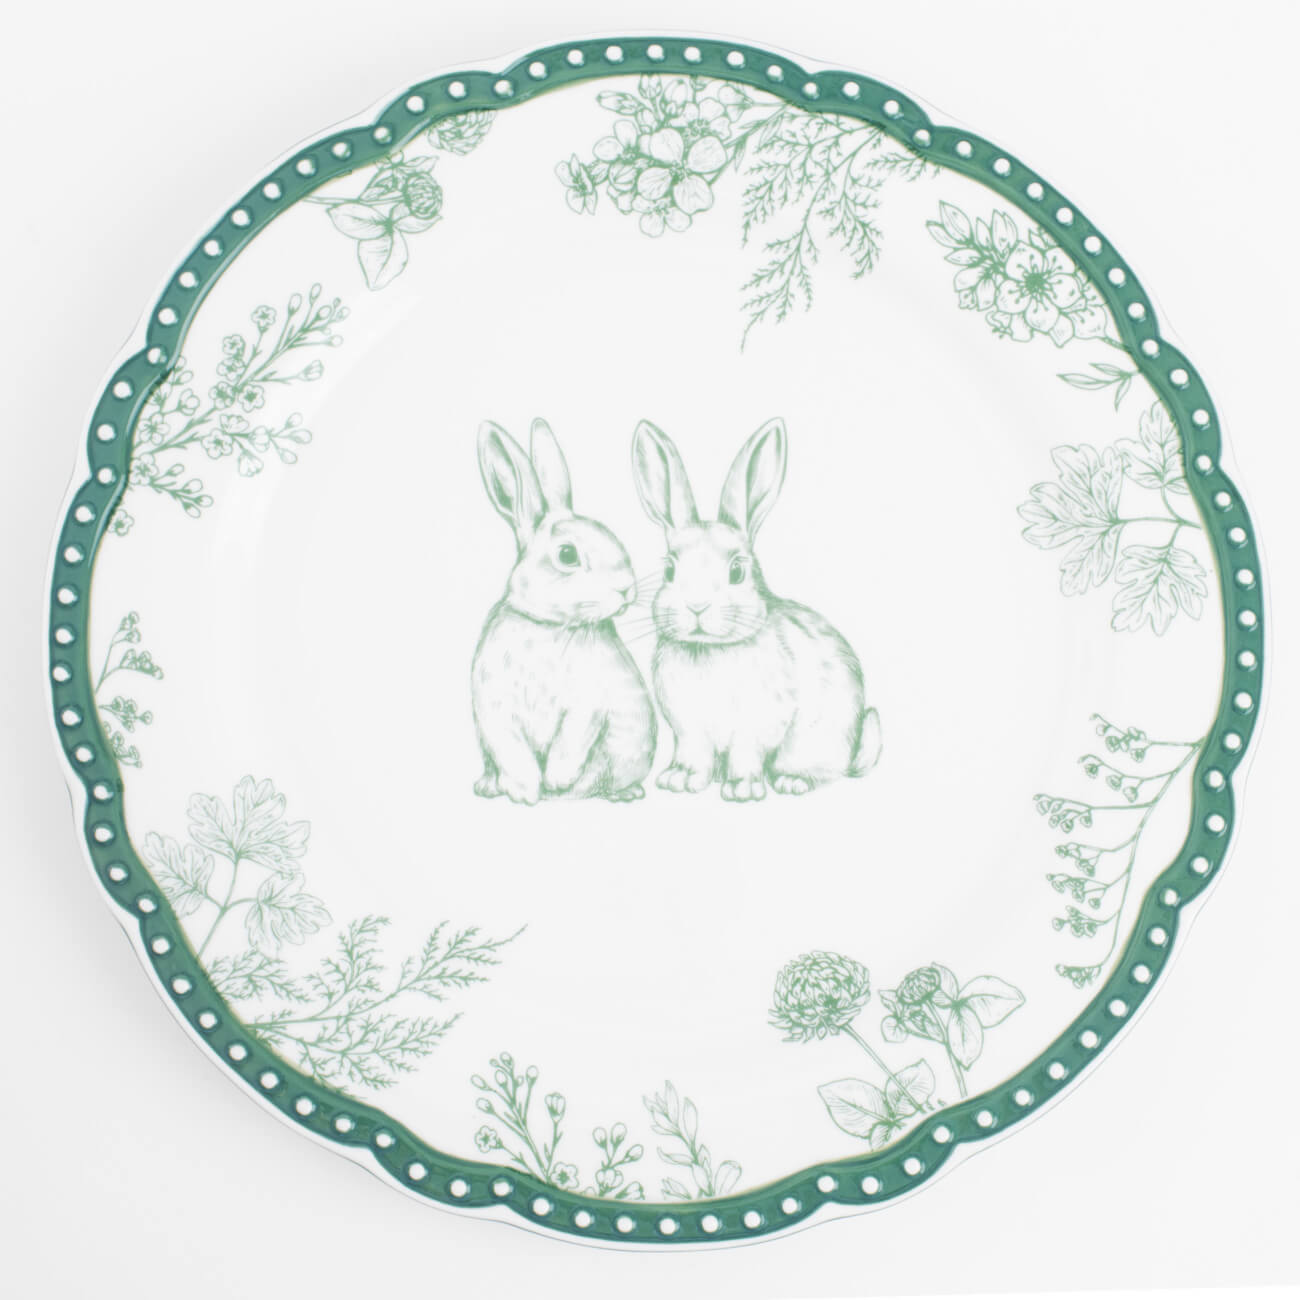 Тарелка обеденная, 27 см, керамика, бело-зеленая, Кролики и цветы, Easter blooming емкость для хранения 15х14 см 390 мл керамика белая кролики easter gold